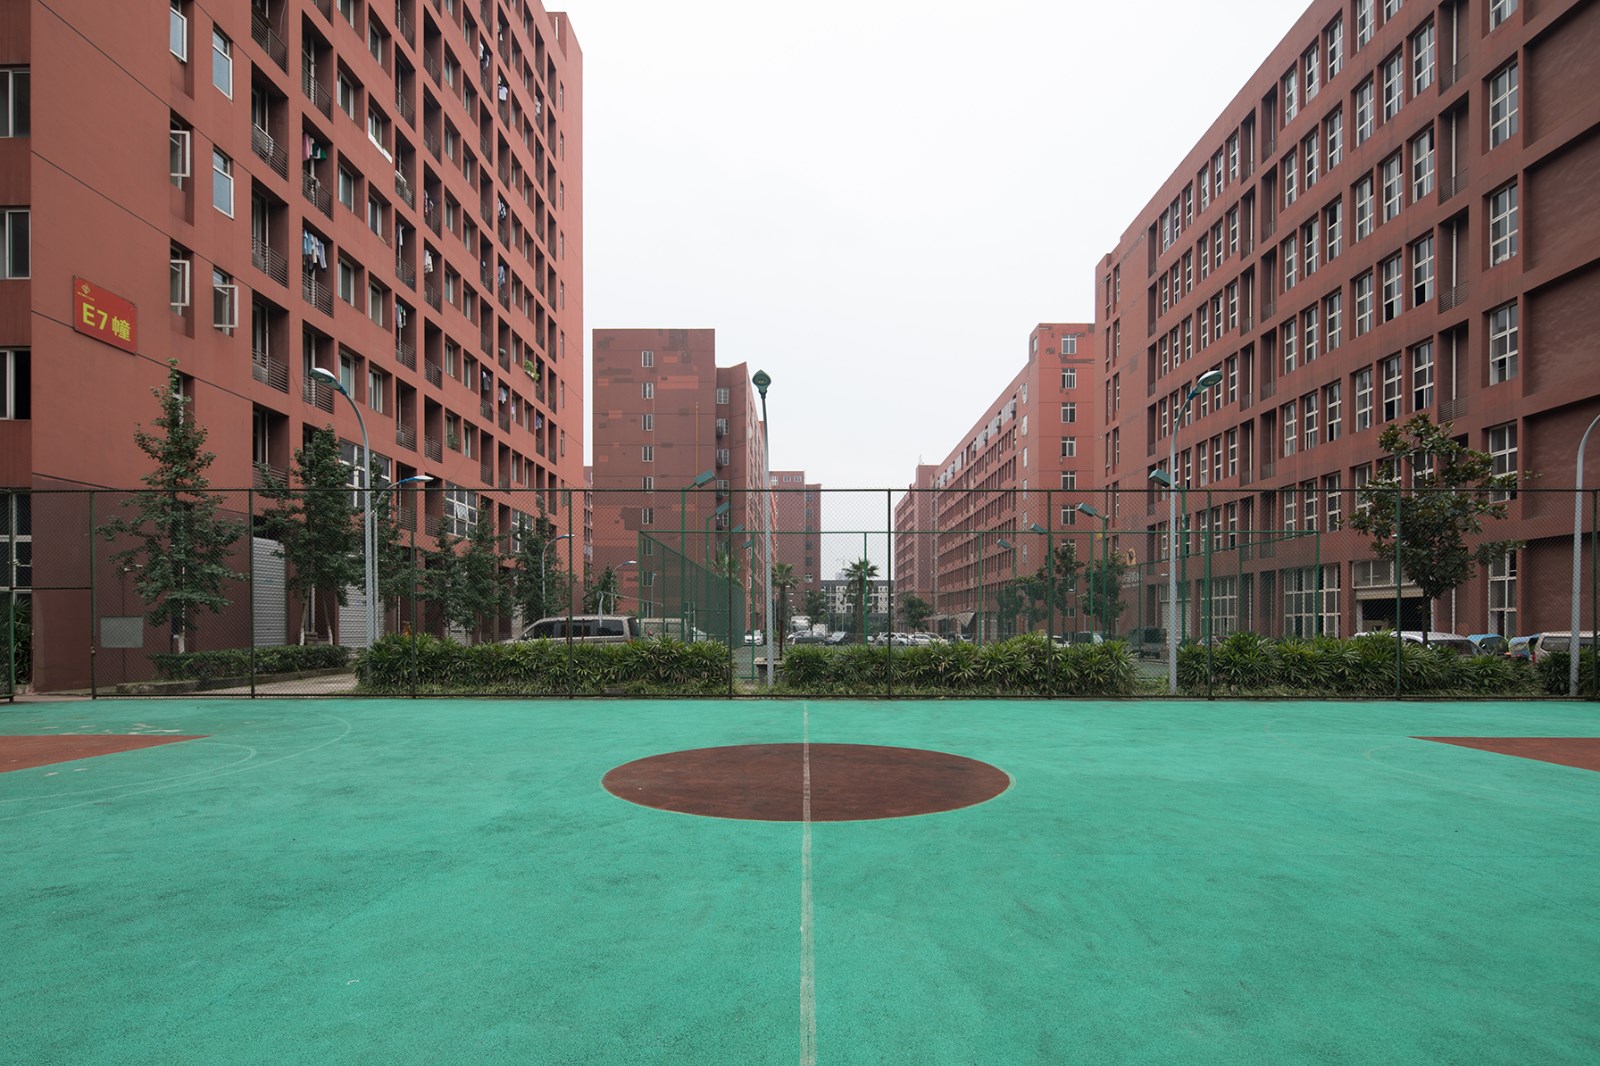 重庆曙光都市工业园建设集团有限公司 环境照片活动图片